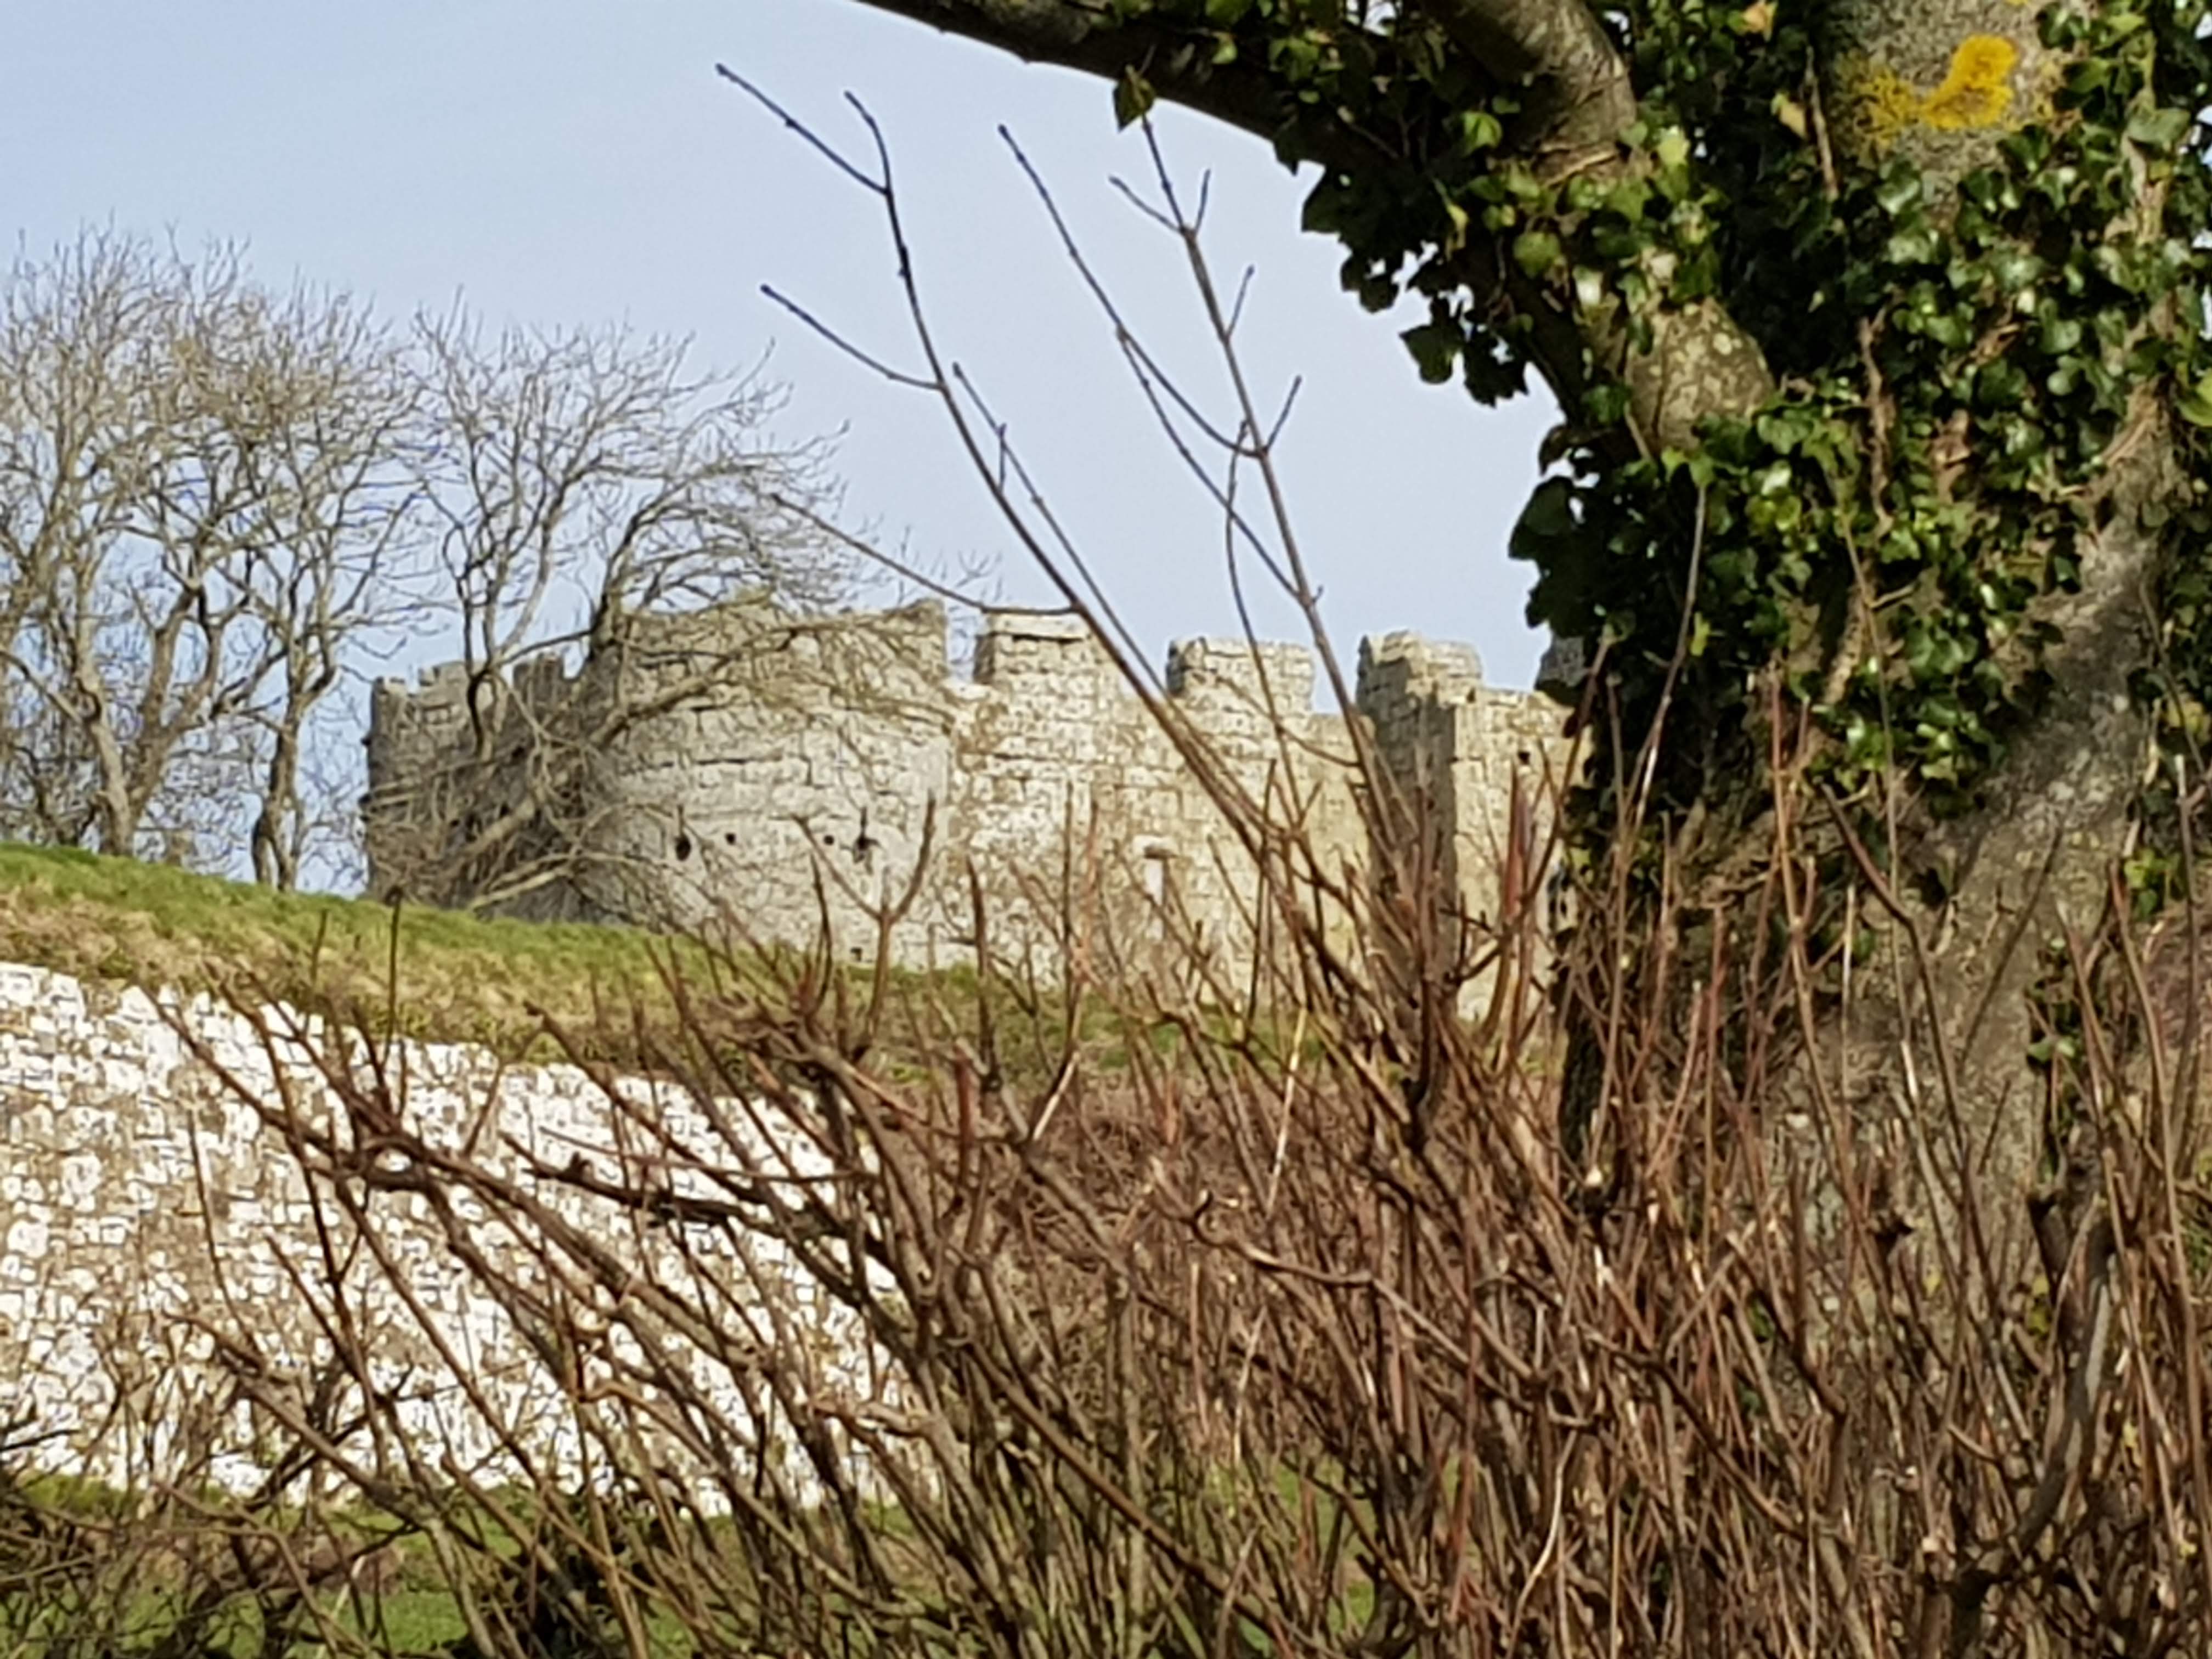 Carisbrooke Castle Image 3